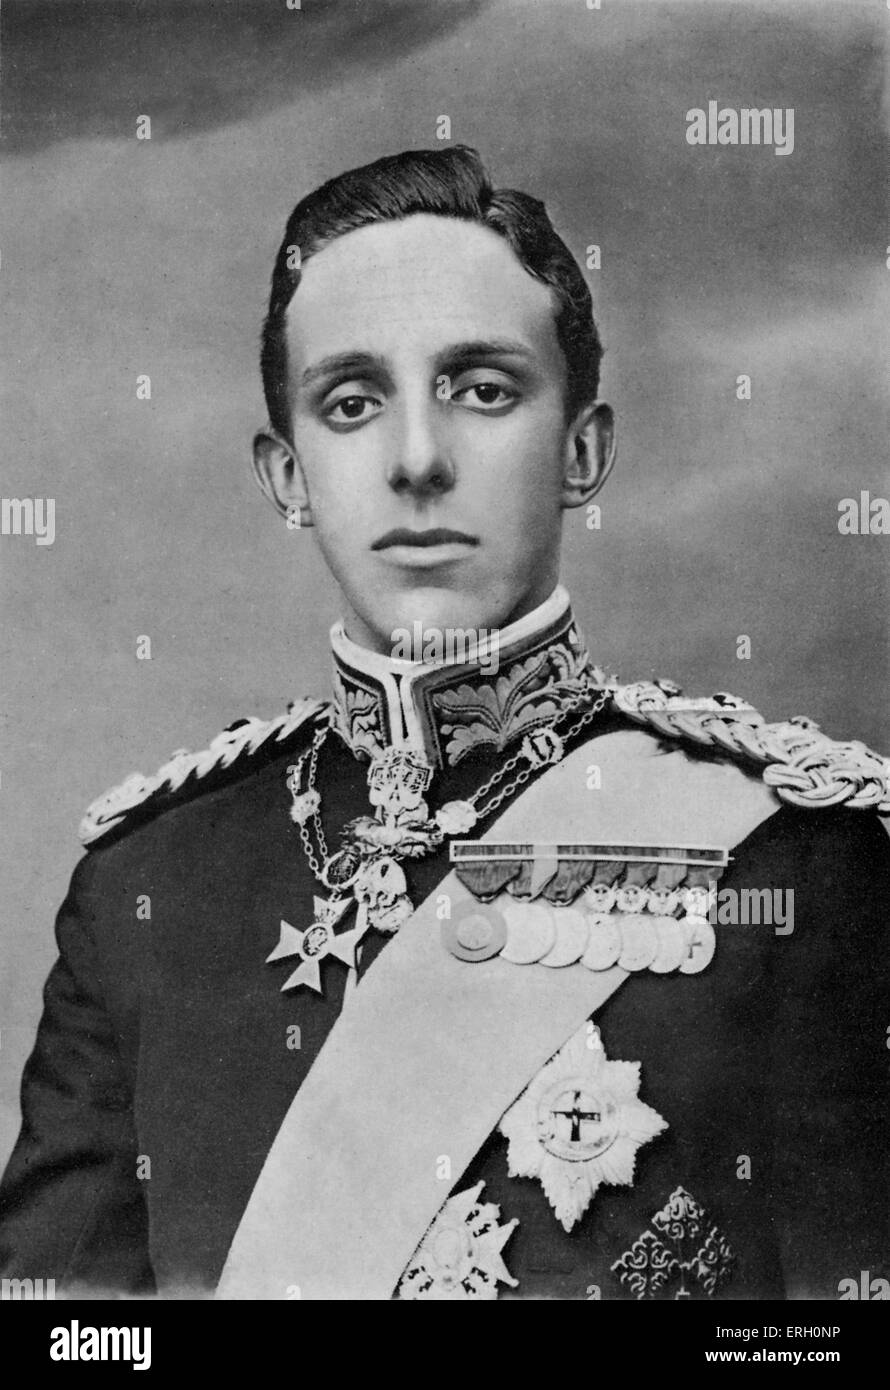 Alfonso XIII, ( 17 maggio 1886 - 28 febbraio 1941), H.M. Il Re di Spagna. Figlio postumo di Alfonso XII di Spagna, fu proclamato re alla sua nascita. Egli regnò dal 1886 al 1931. Sua madre, la Regina Maria Cristina, è stato nominato reggente durante la sua minoranza. Nel 1902, al raggiungimento del suo sedicesimo anno il re ha assunto il controllo di stato. Foto Stock